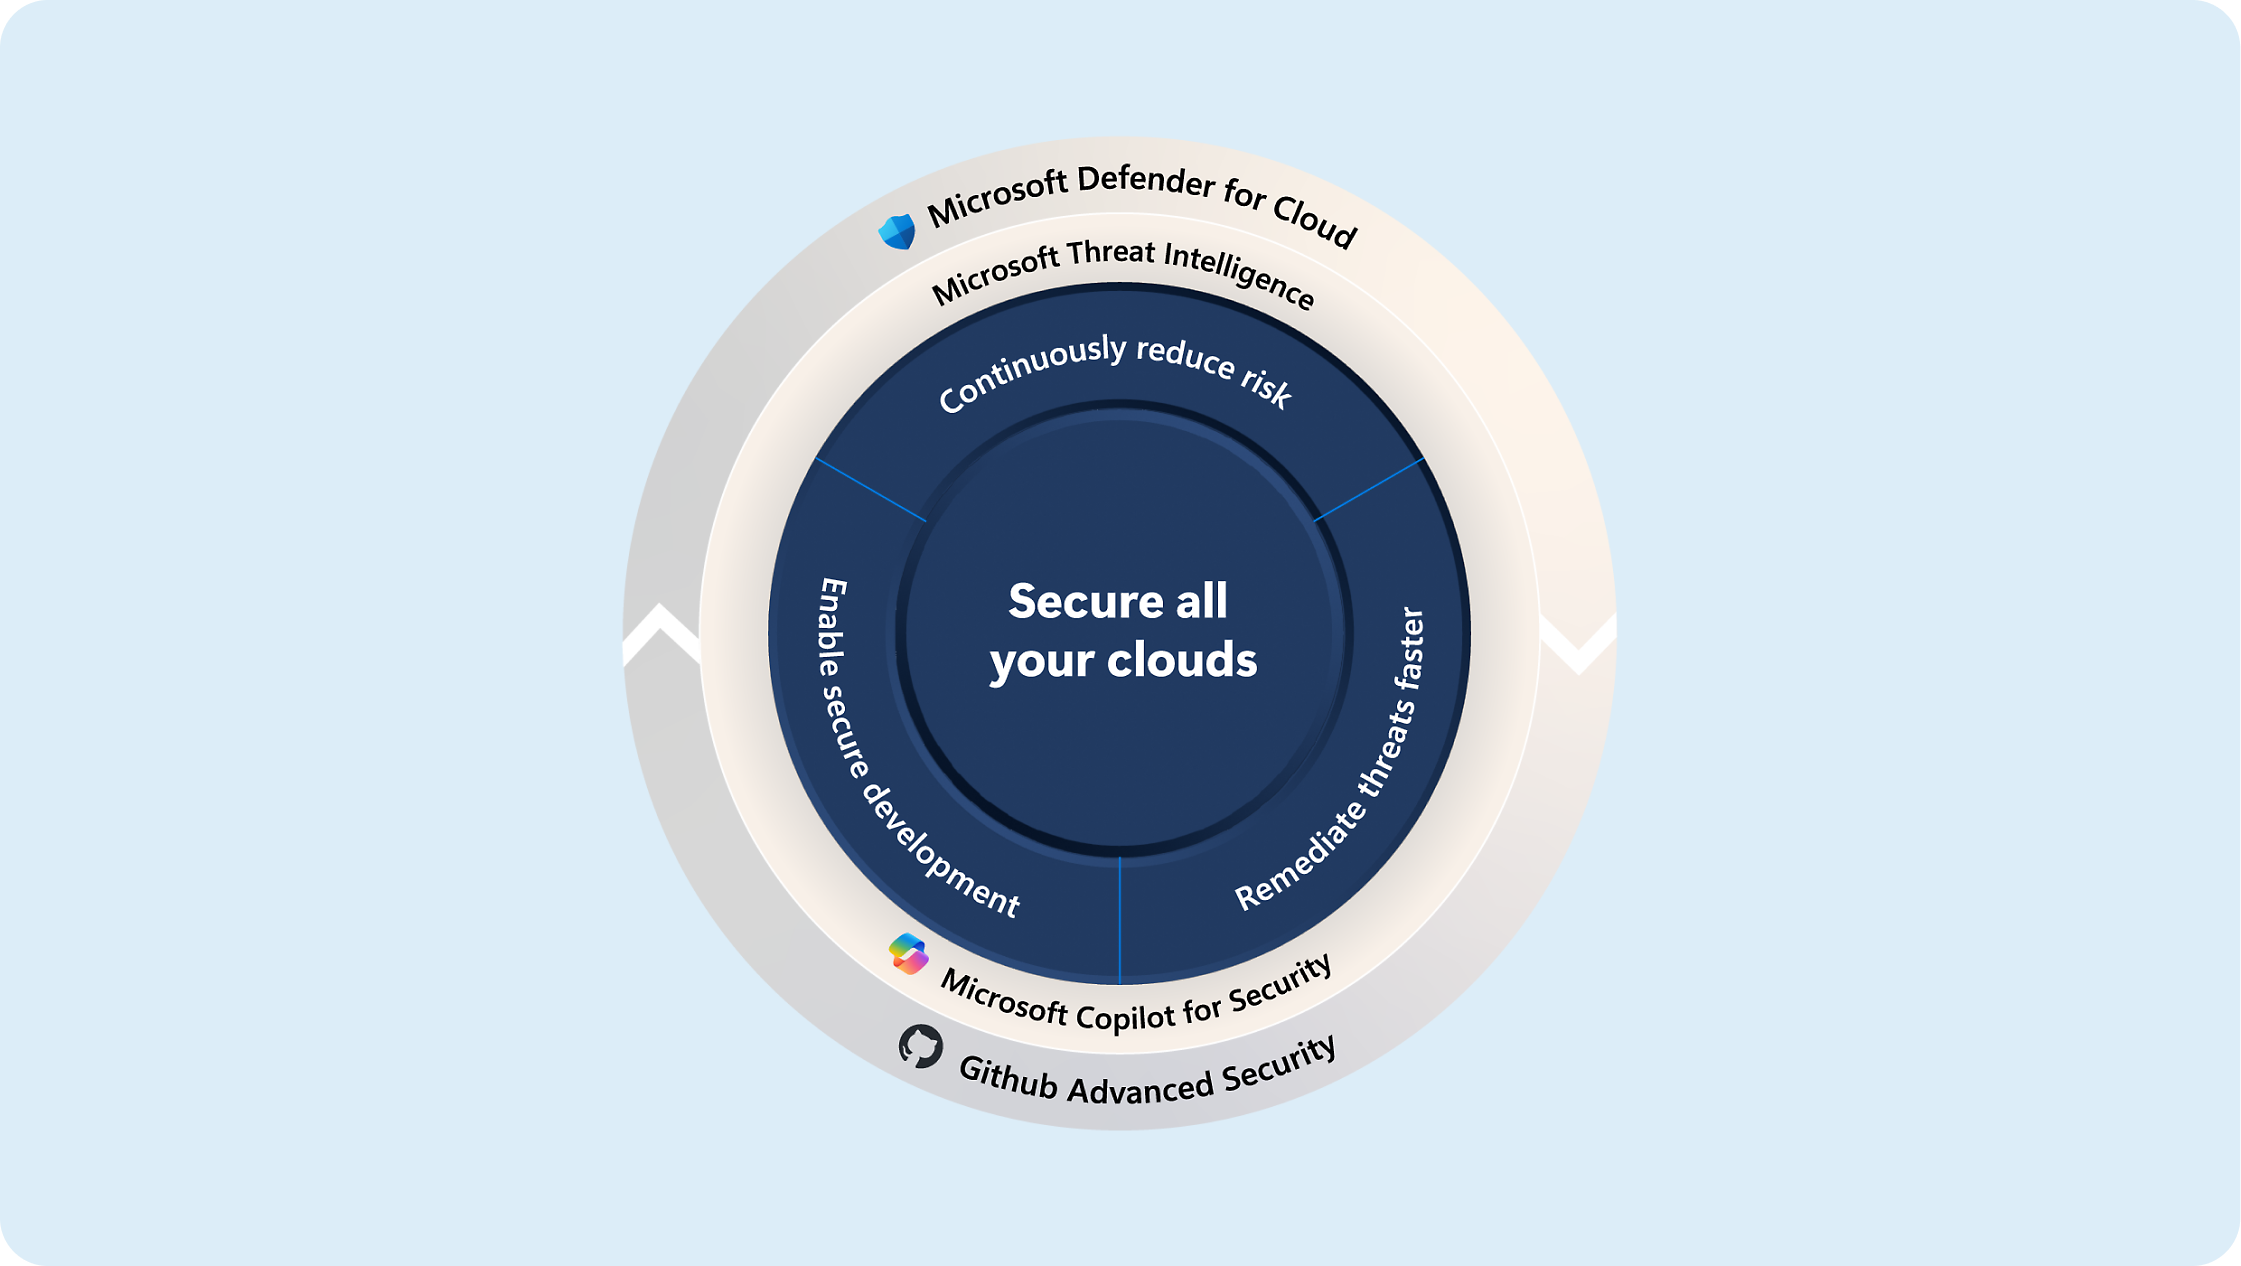 Schemat przedstawiający strategie zabezpieczania chmur za pomocą aplikacji Microsoft Defender, Analizy zagrożeń i Copilot dla rozwiązań zabezpieczających